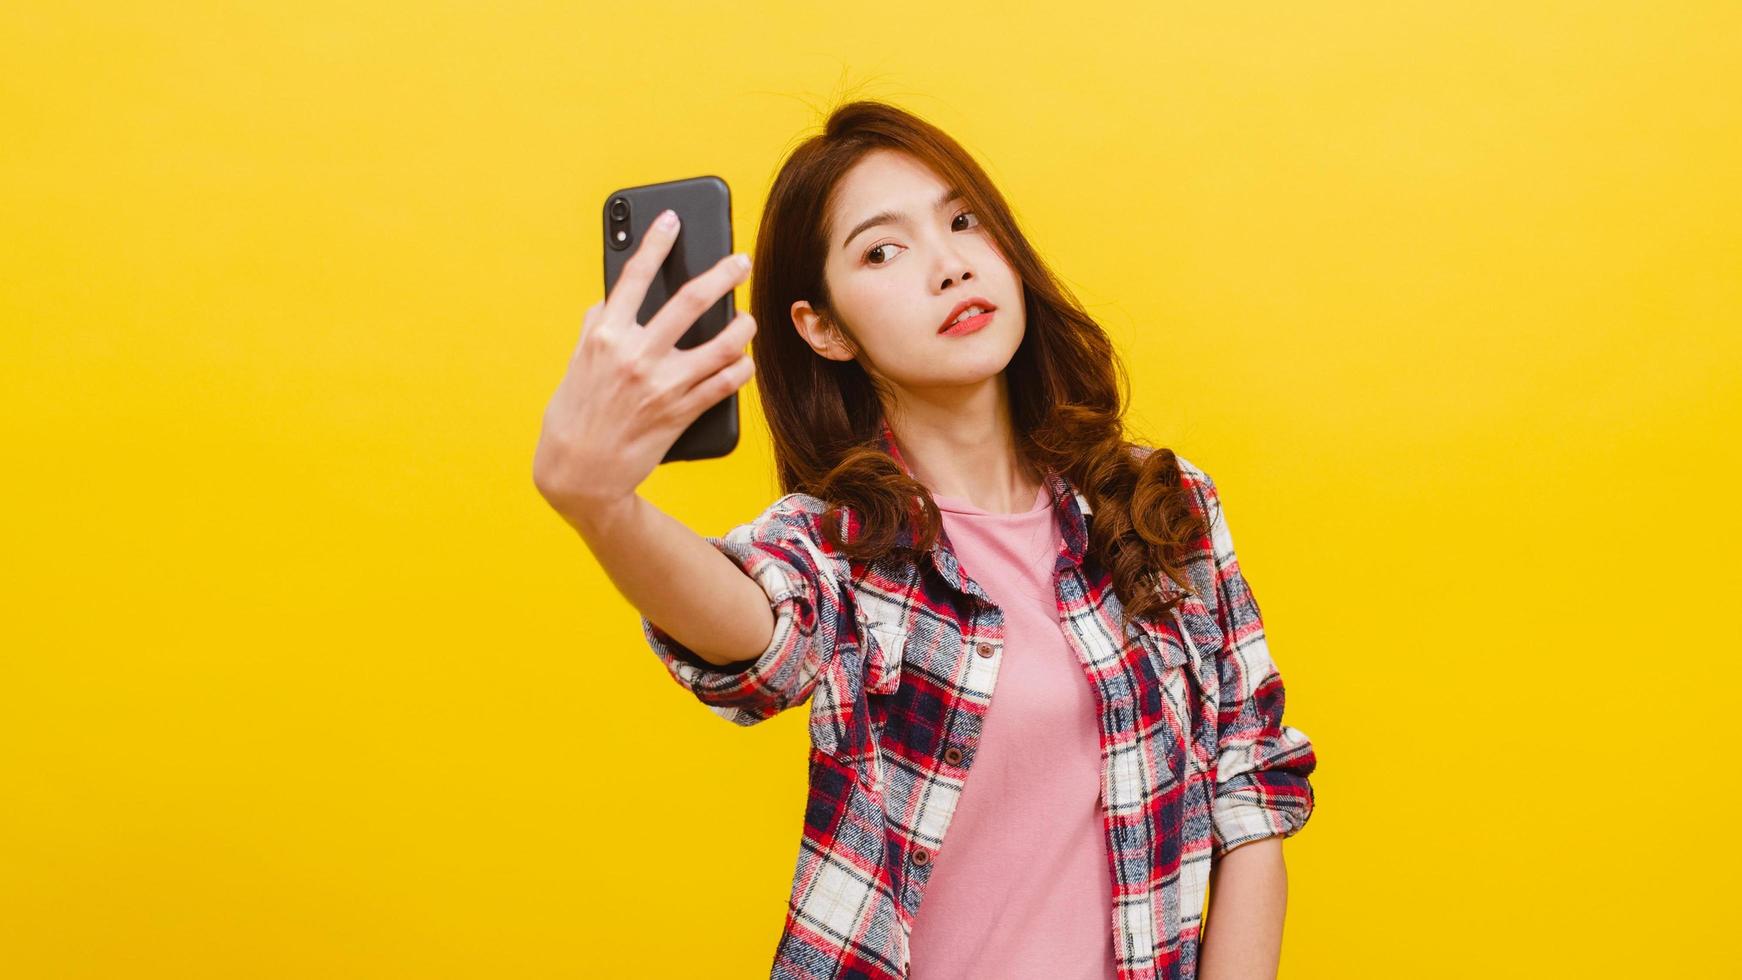 asiatische frau, die selfie foto am telefon mit positivem ausdruck macht.